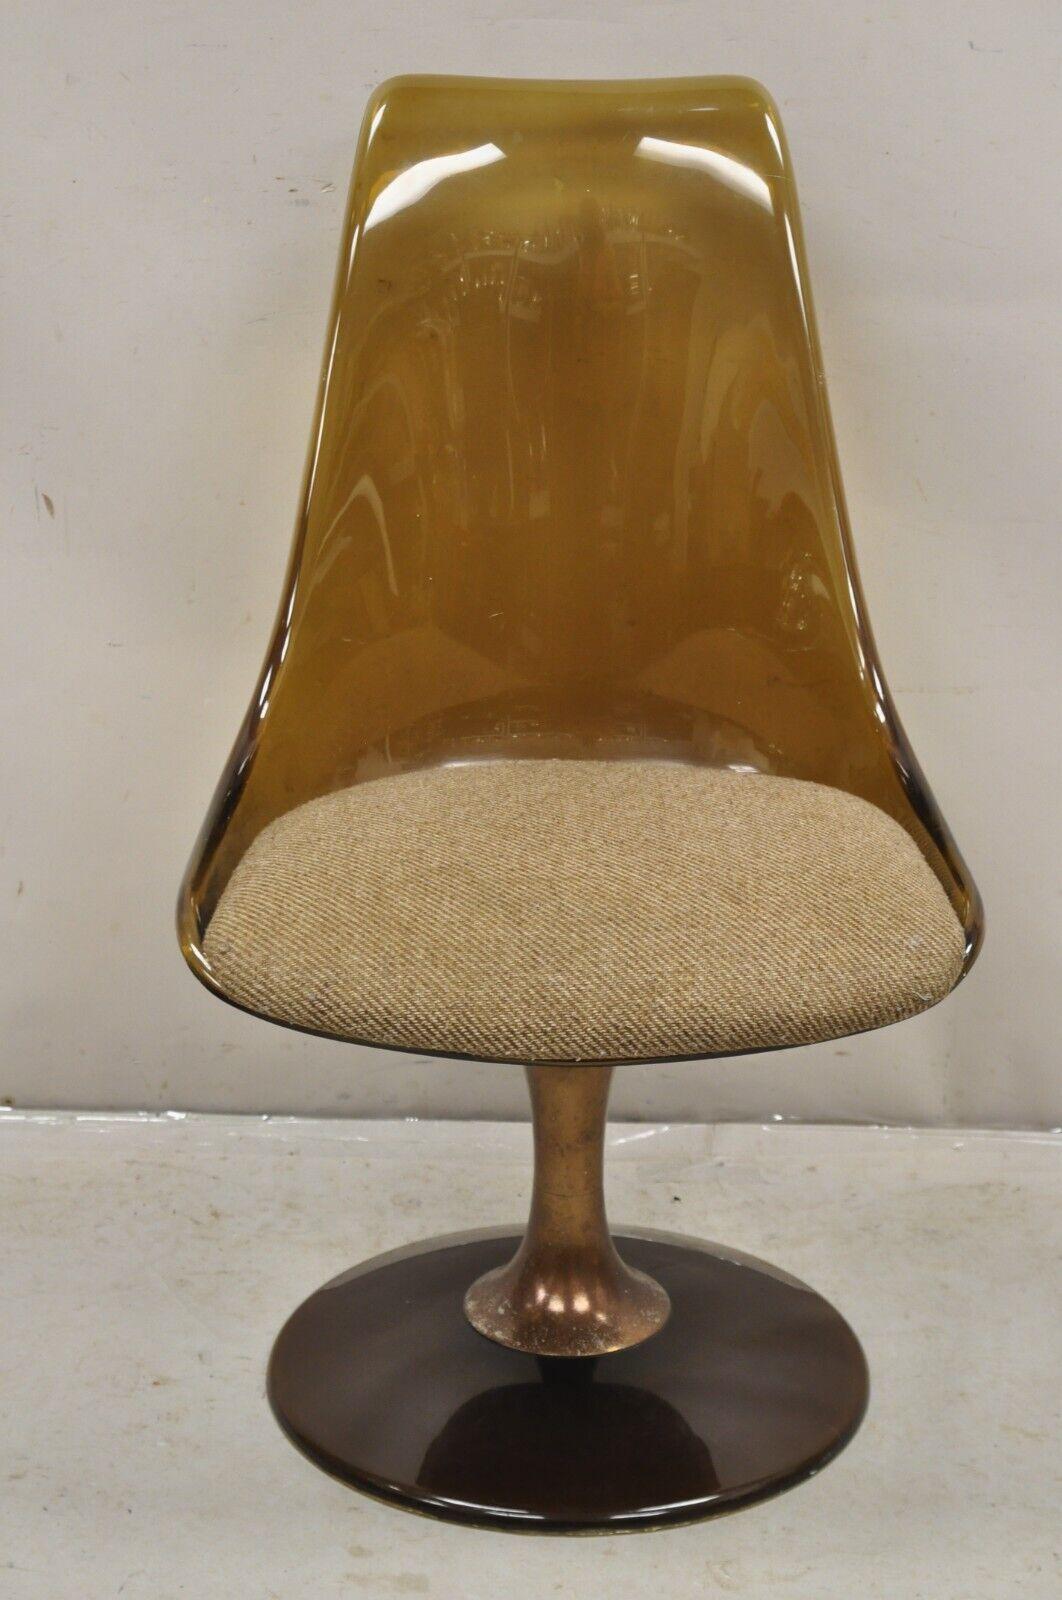 Chaise de salle à manger vintage Chromcraft Mid Century Modern Amber Smoked Lucite Swivel Chair. L'article est doté d'un socle pivotant, d'une étiquette d'origine et d'un très bel article vintage. Vers les années 60. Dimensions : 35